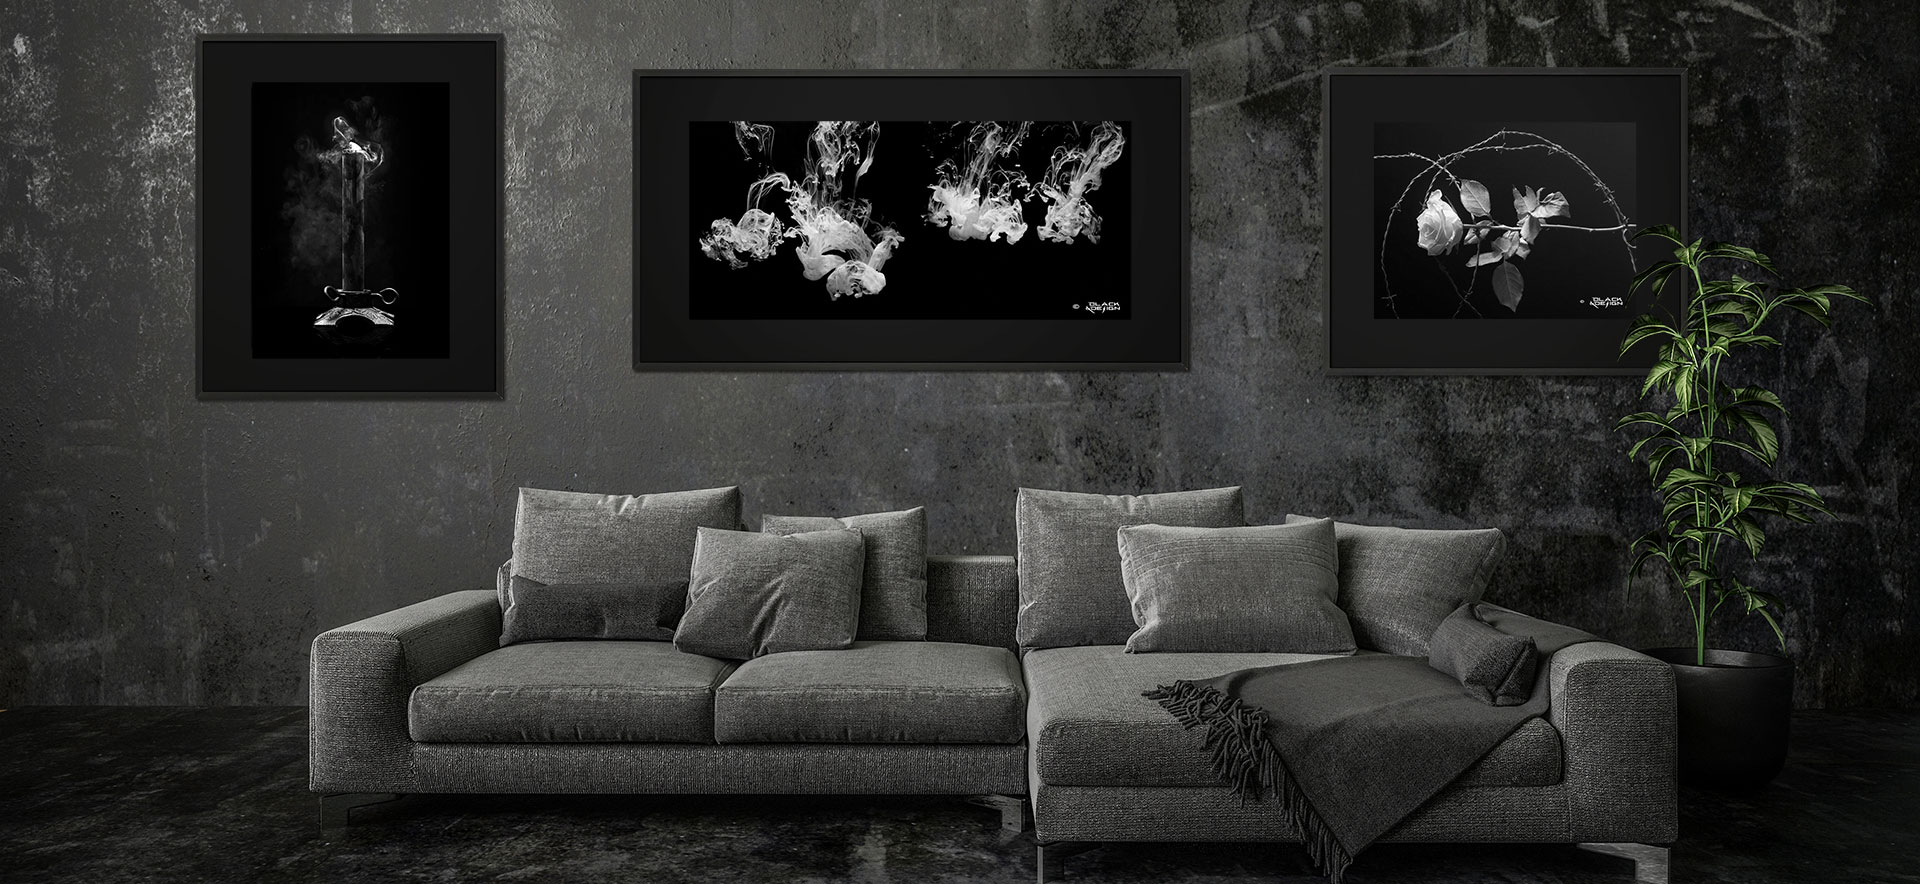 Fotokonst - inspireras av svartvita motiv på Balck & Design.